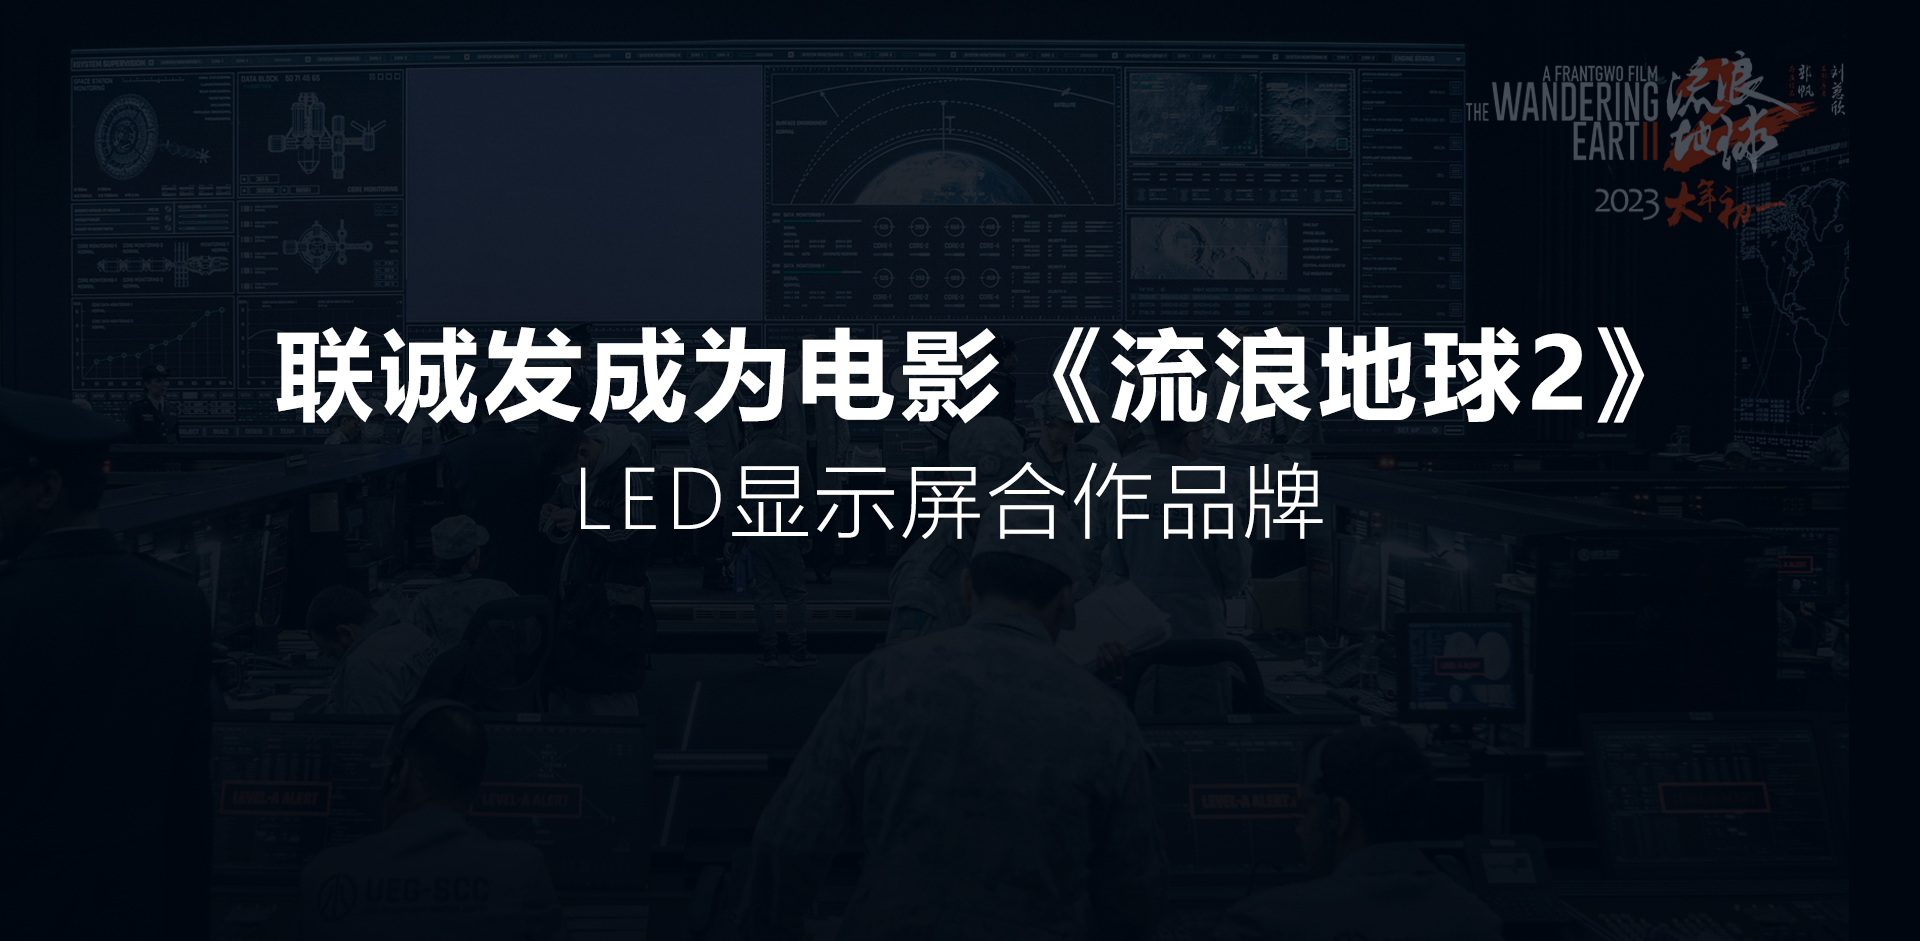 广东26选5开奖成为电影《流浪地球2》LED显示屏合作品牌